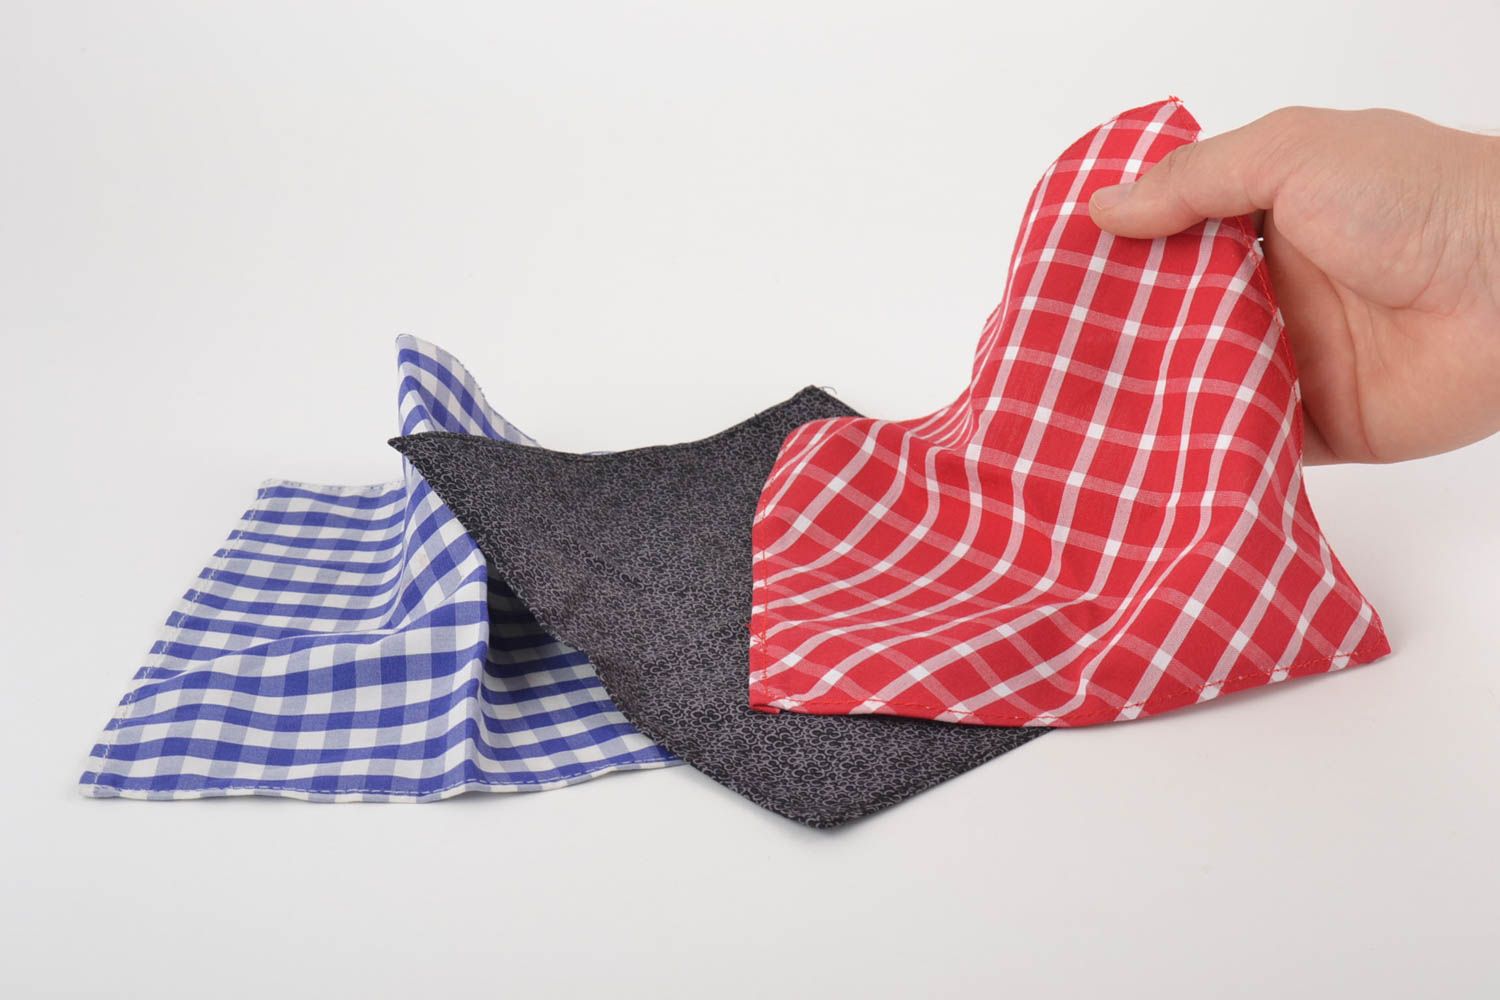 Originelle schöne bunte ungewöhnliche handgemachte Taschentücher mit Print  foto 5